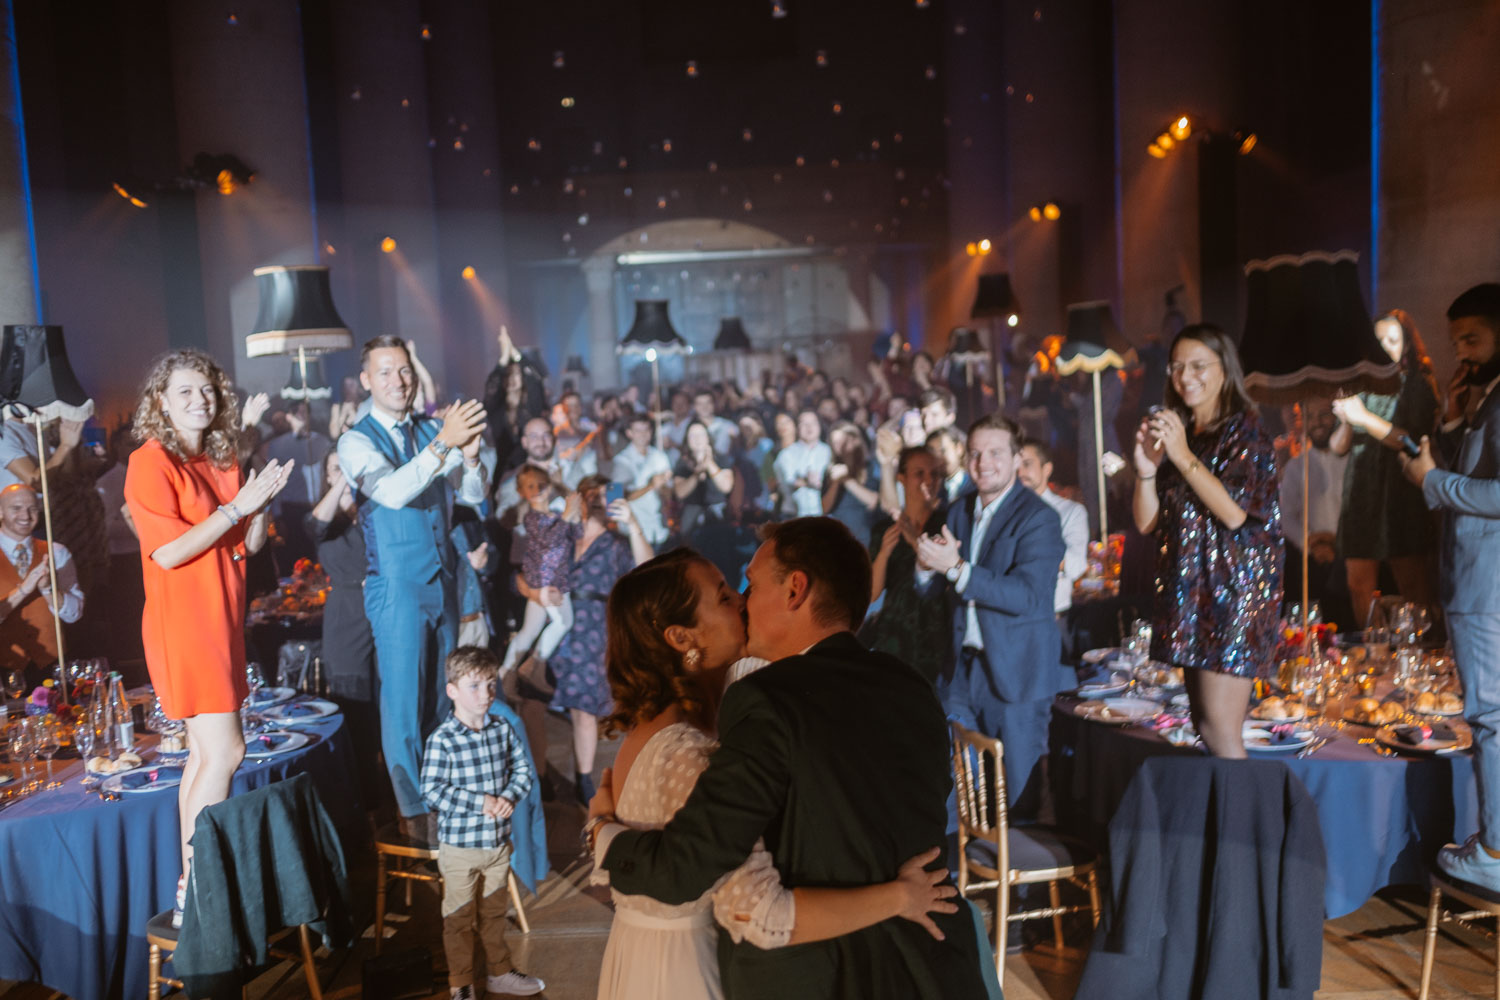 Reportage photo lifestyle d’un mariage d’automne sur le thème de la comédie musicale La La Land